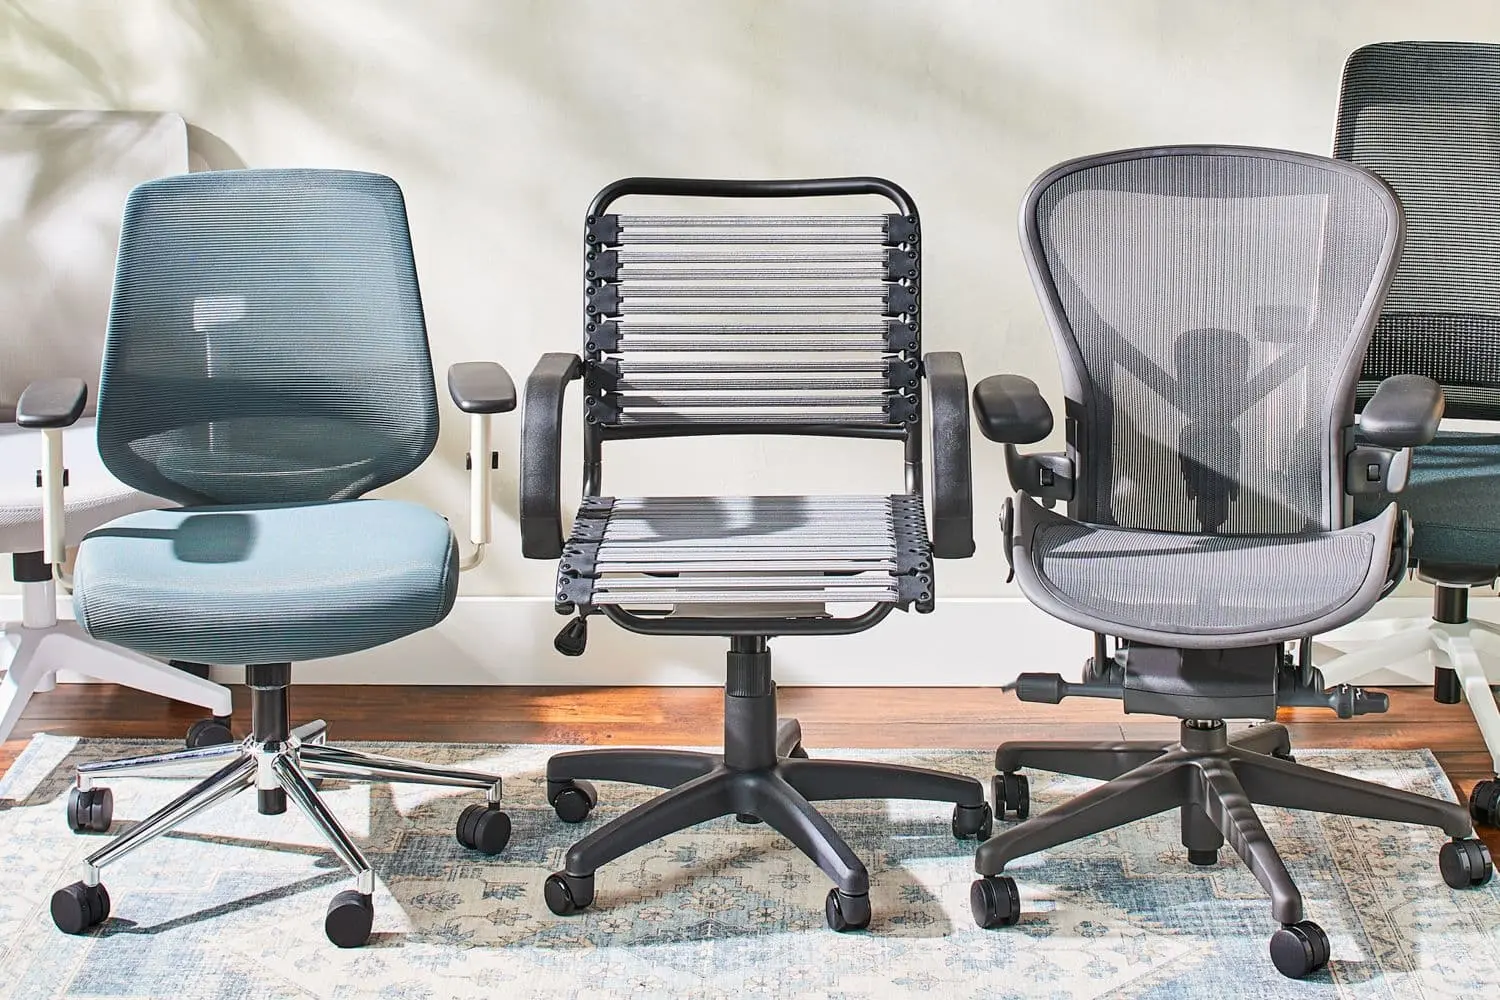 Kích thước ghế văn phòng tiêu chuẩn giúp tư thế ngồi thoải mái